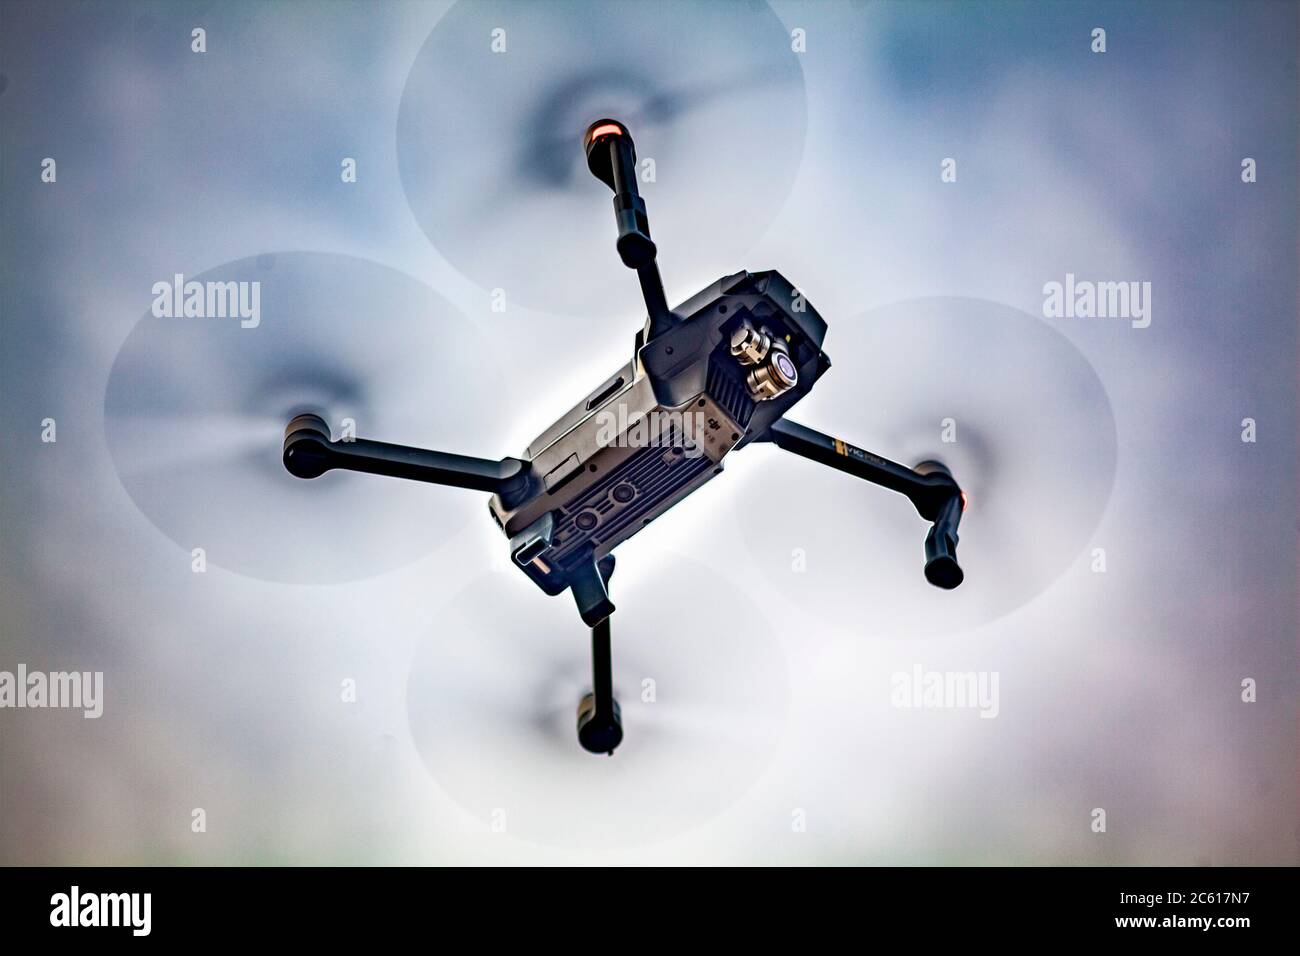 Gros plan d'un drone Quadcopter de caméra 4K aérienne DJI Mavic Pro compatible wi-fi, pour les loisirs, volant à faible hauteur. Banque D'Images